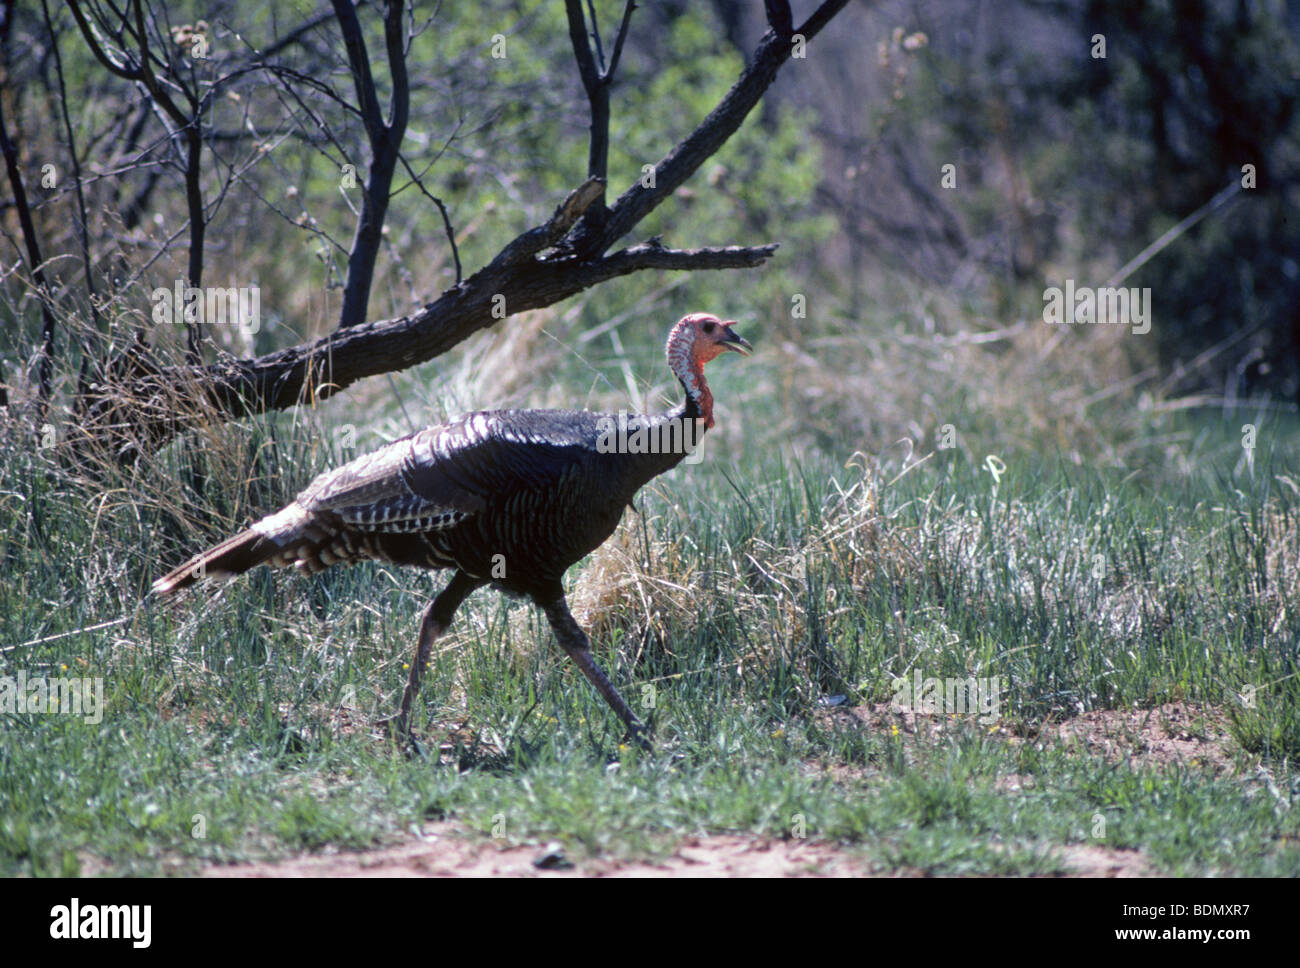 Un jeune homme sauvage ou tom american turquie, également appelé jake la Turquie, Meleagris gallopavo, dans un paysage au Texas Banque D'Images